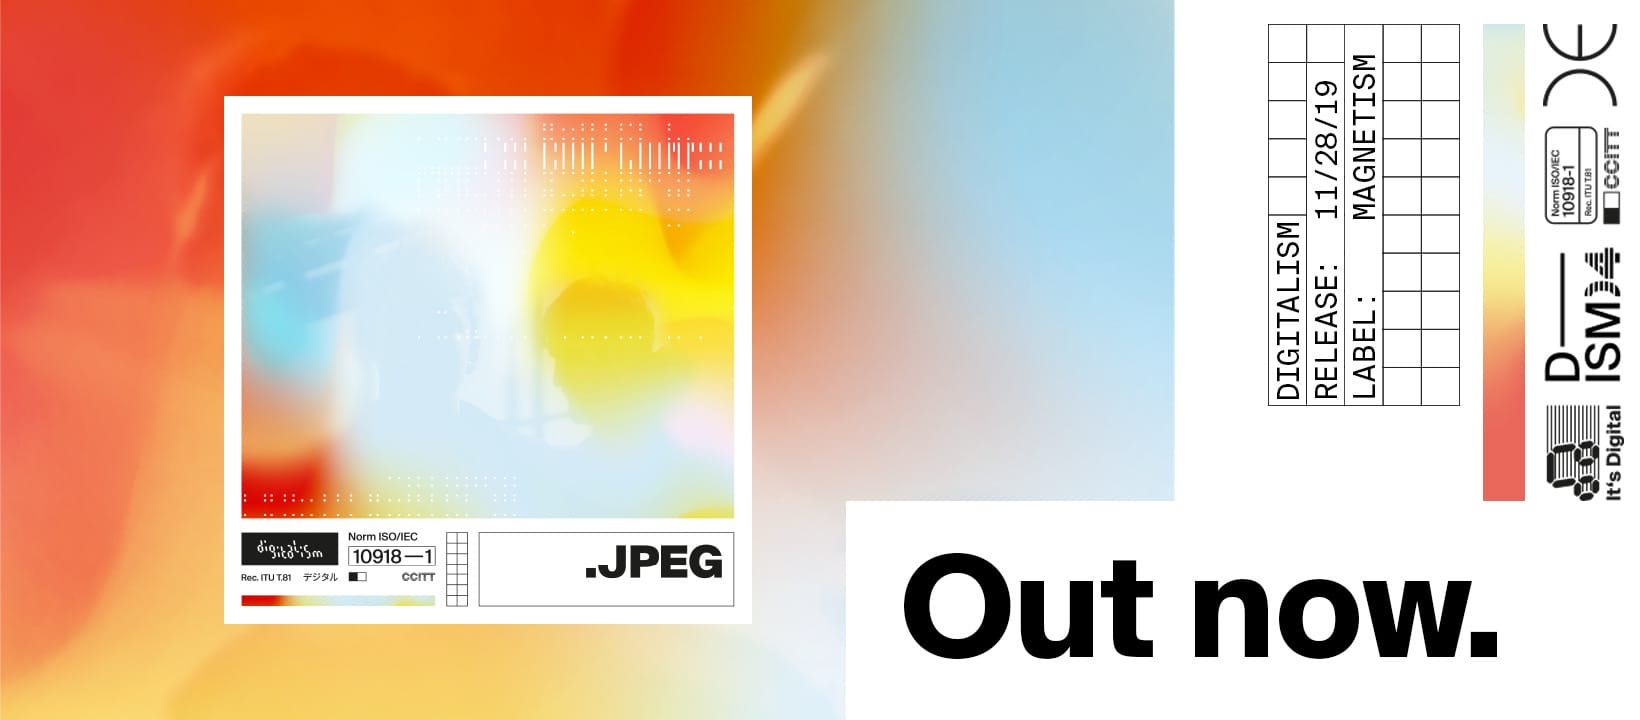 Après mirage en 2016 Digitalism revient avec un nouvel album : Jpeg 5